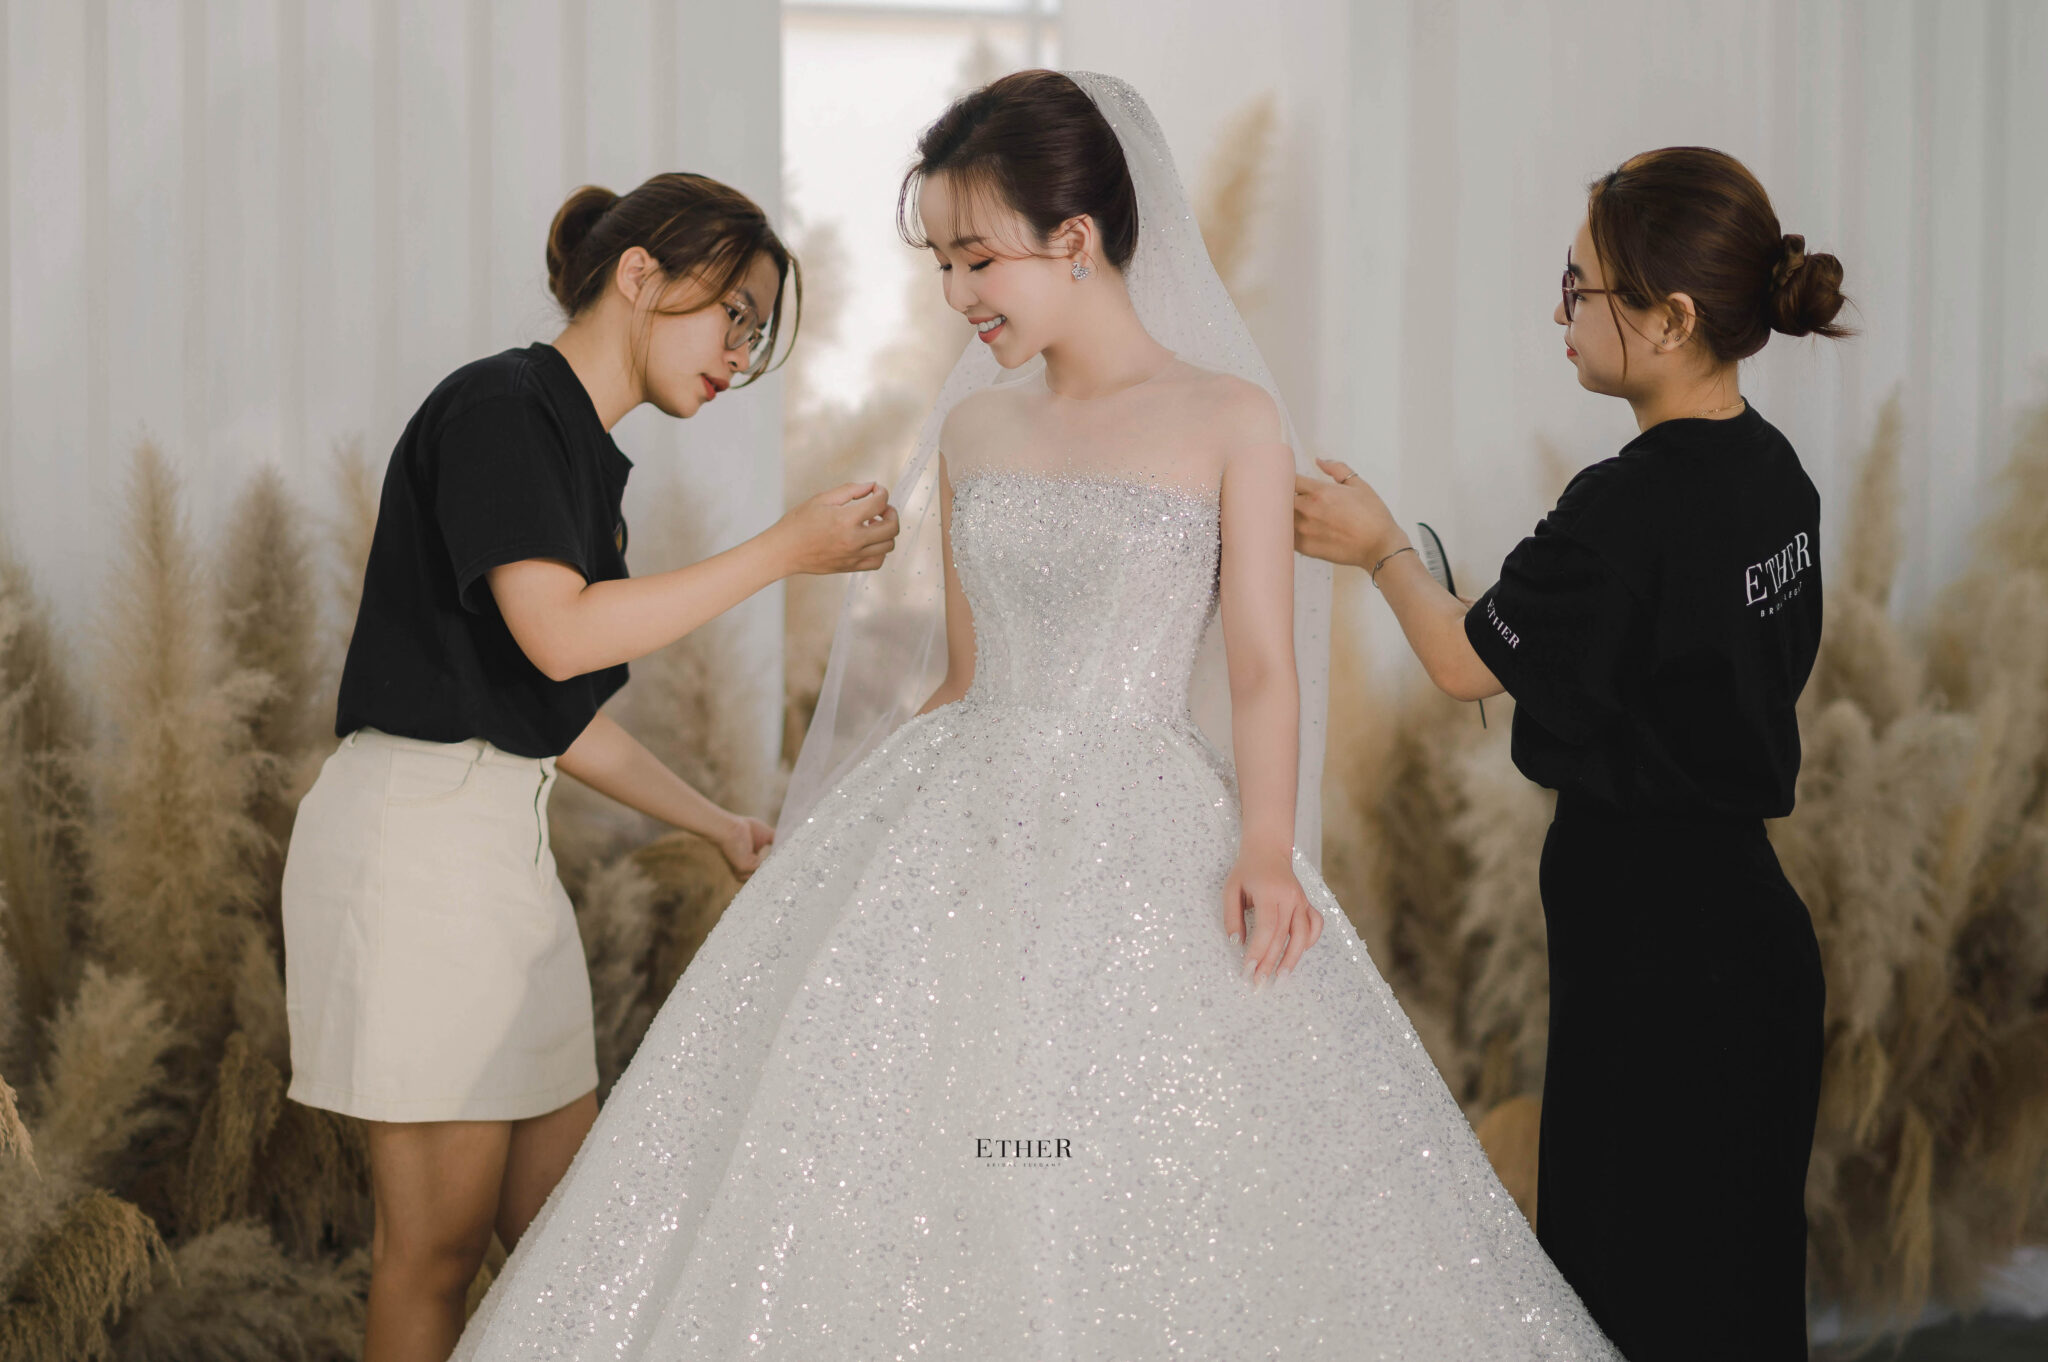 Nếu chiếc váy cưới có những điểm chưa vừa ý
Ether Bridal sẽ chỉnh sửa sao cho phù hợp nhất với nàng
